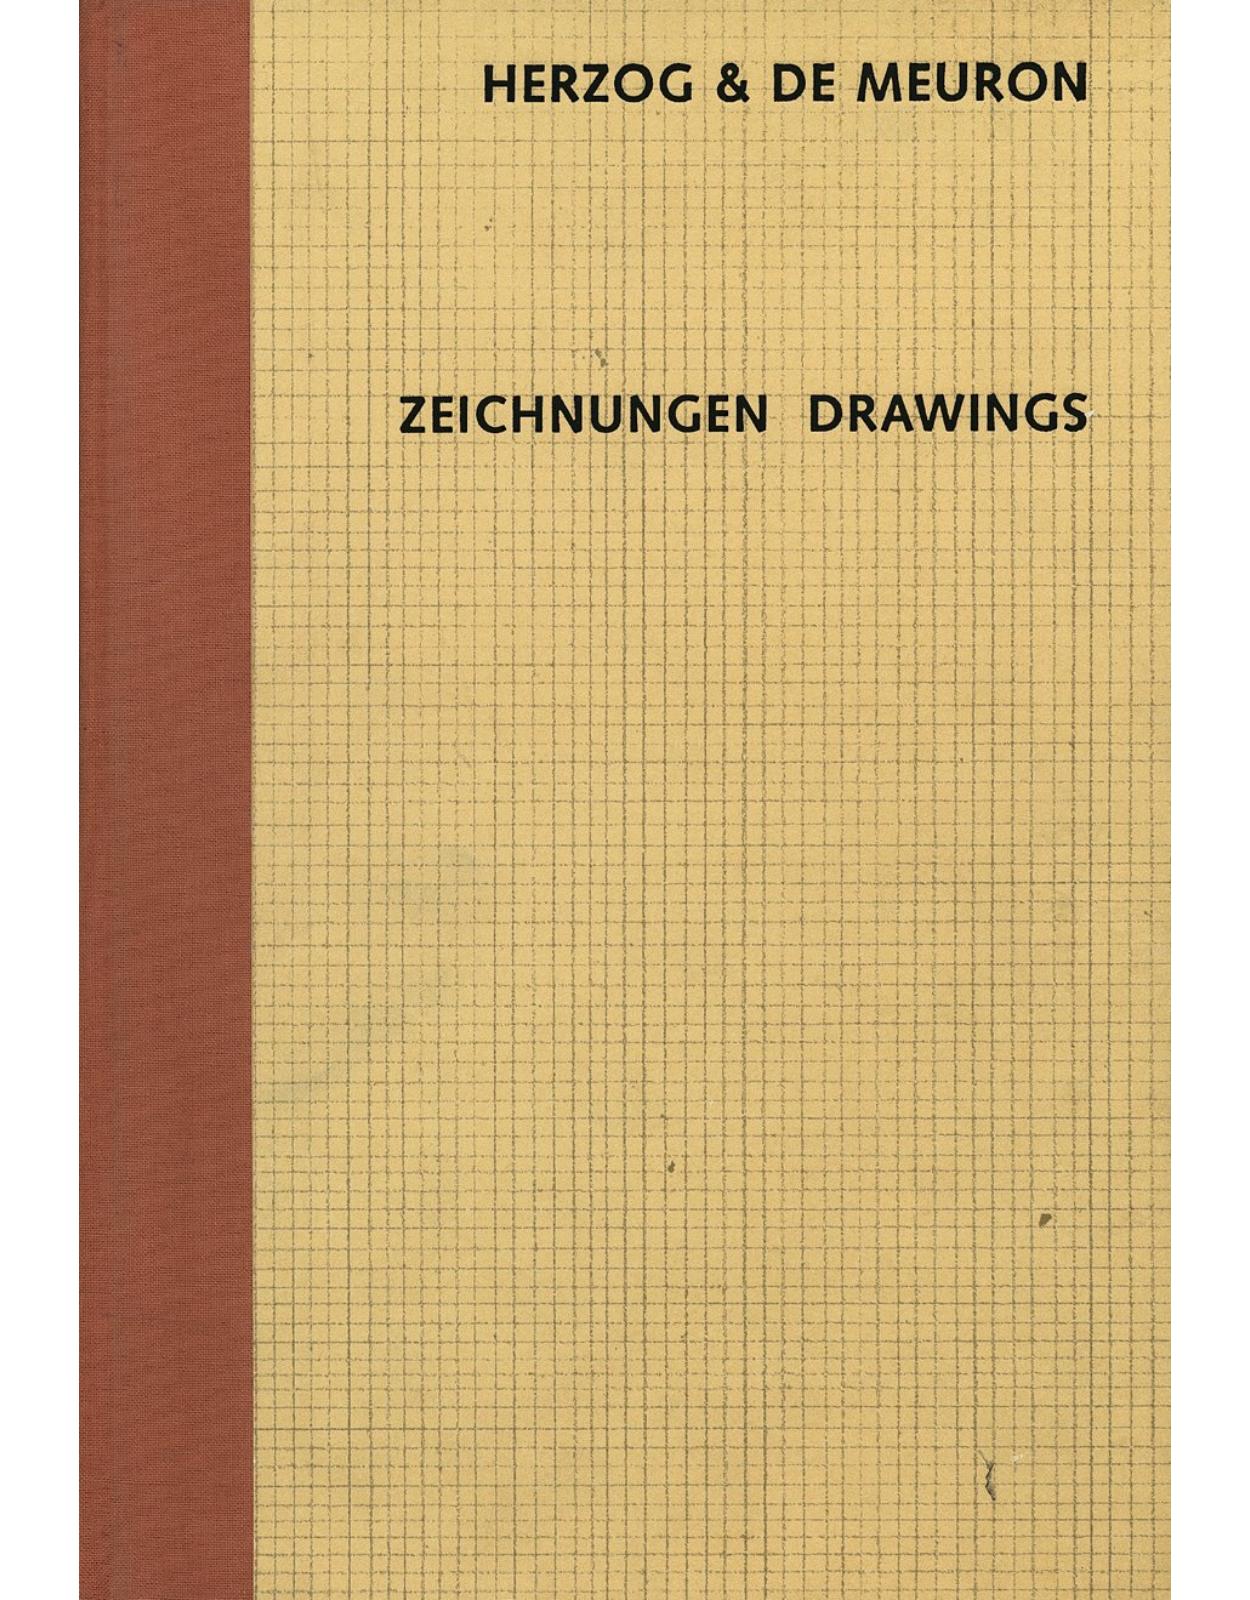 Herzog & De Meuron: Drawings